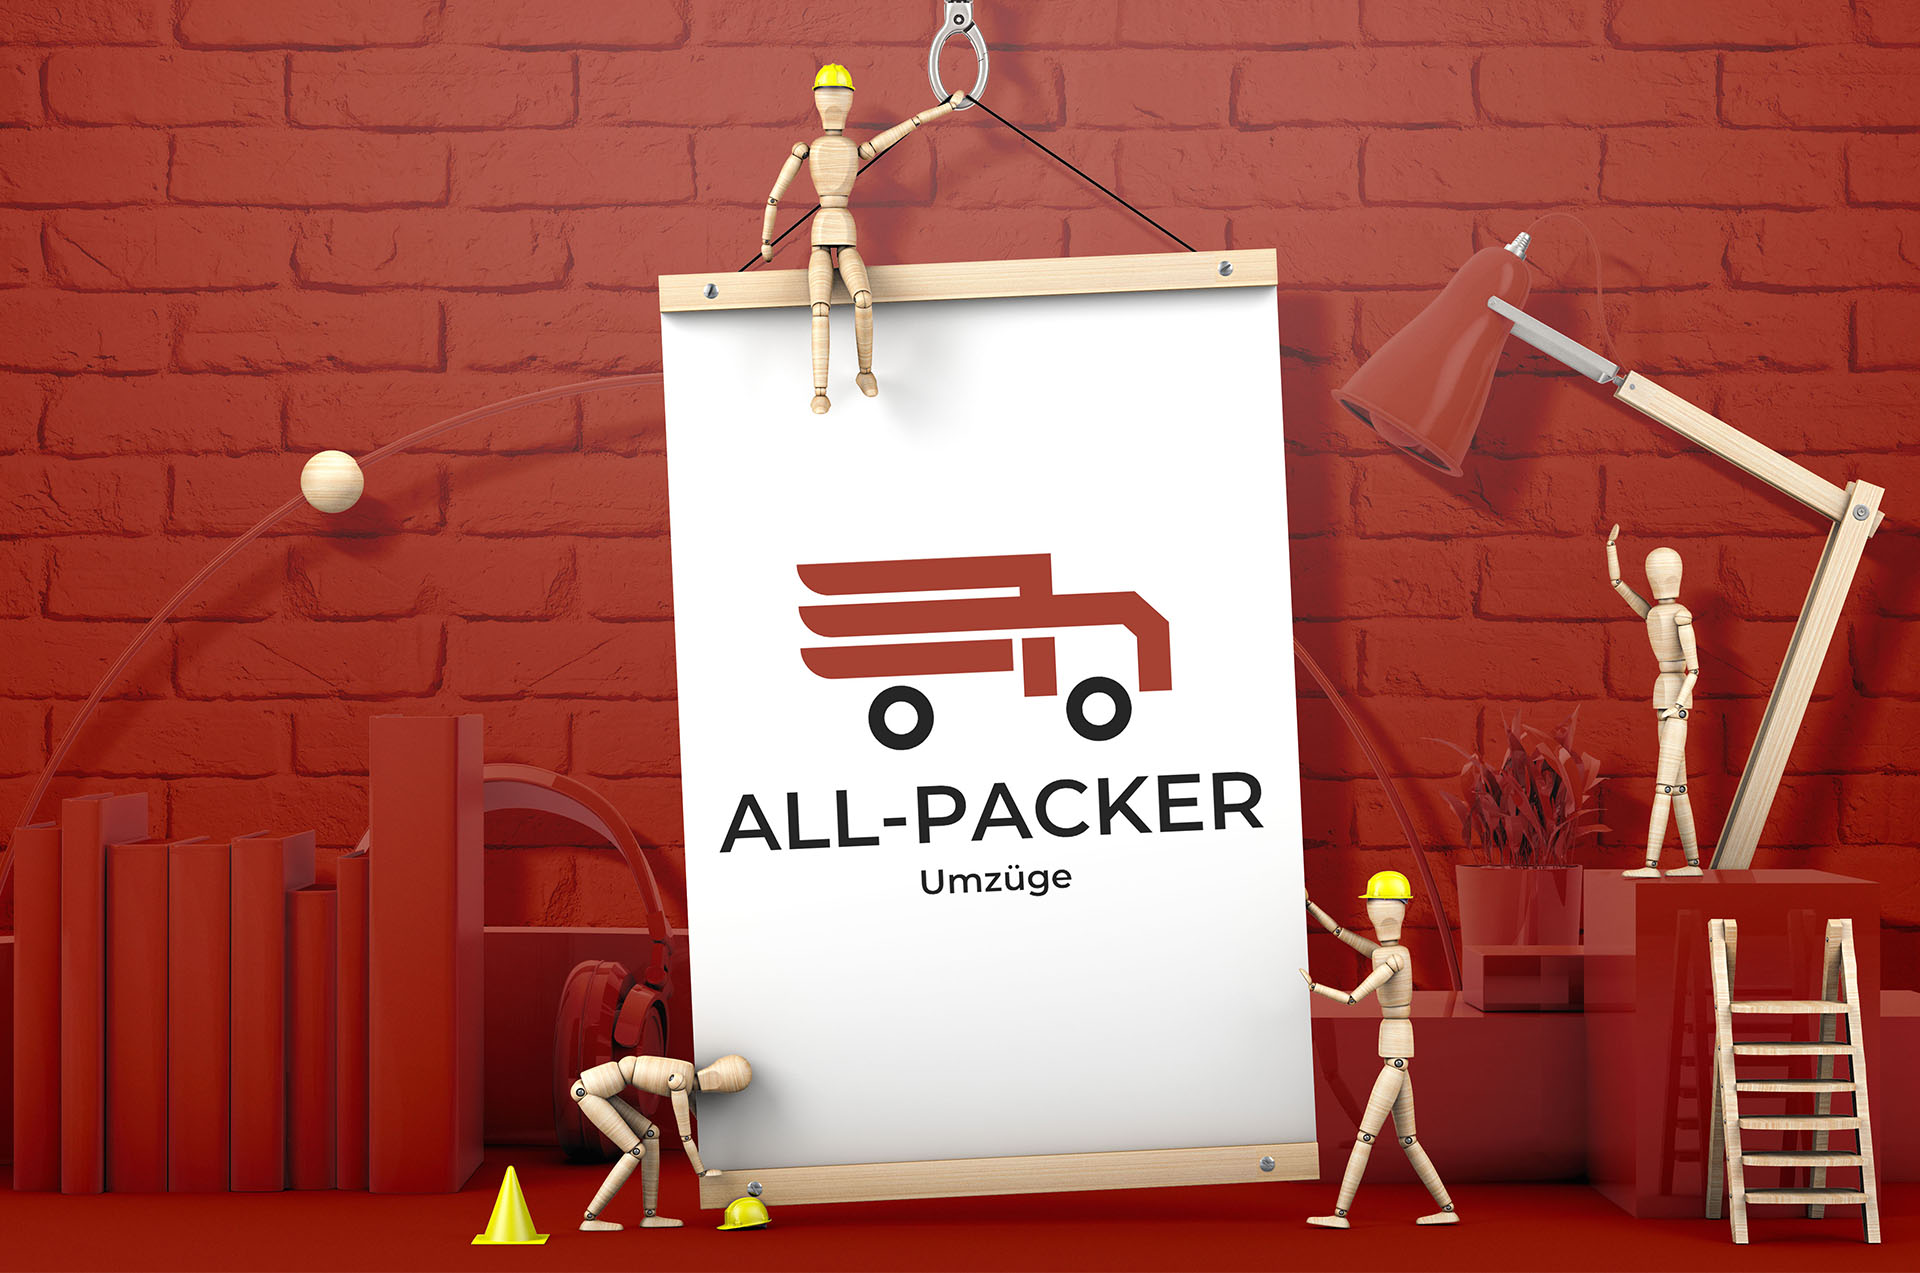 All-Packer - Umzugsunternehmen aus Hannover